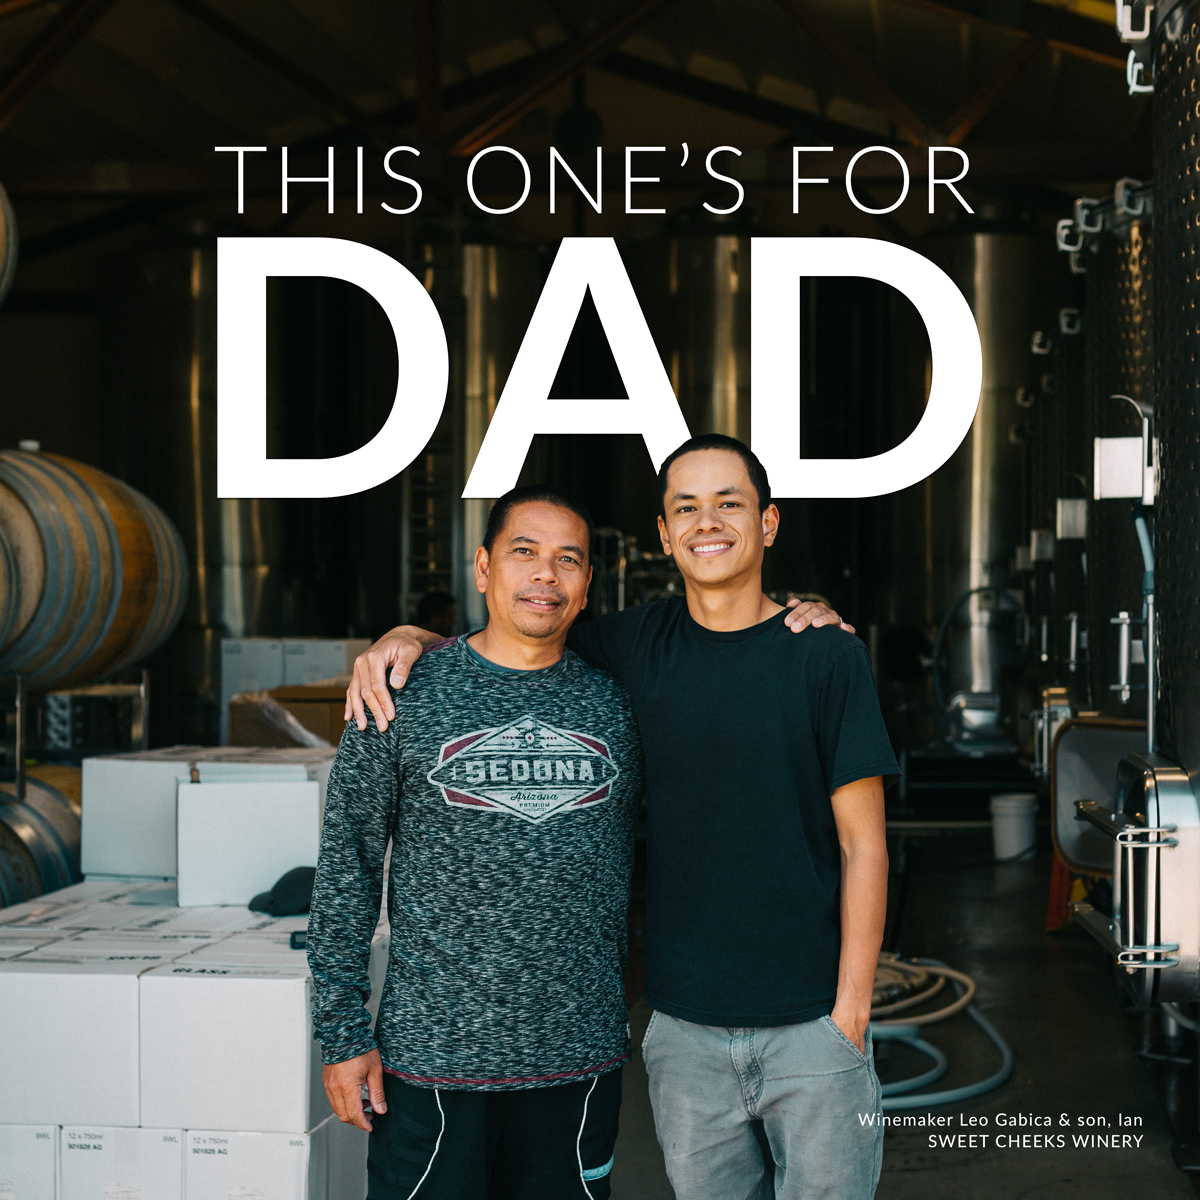 Winemaker Dads Interviews